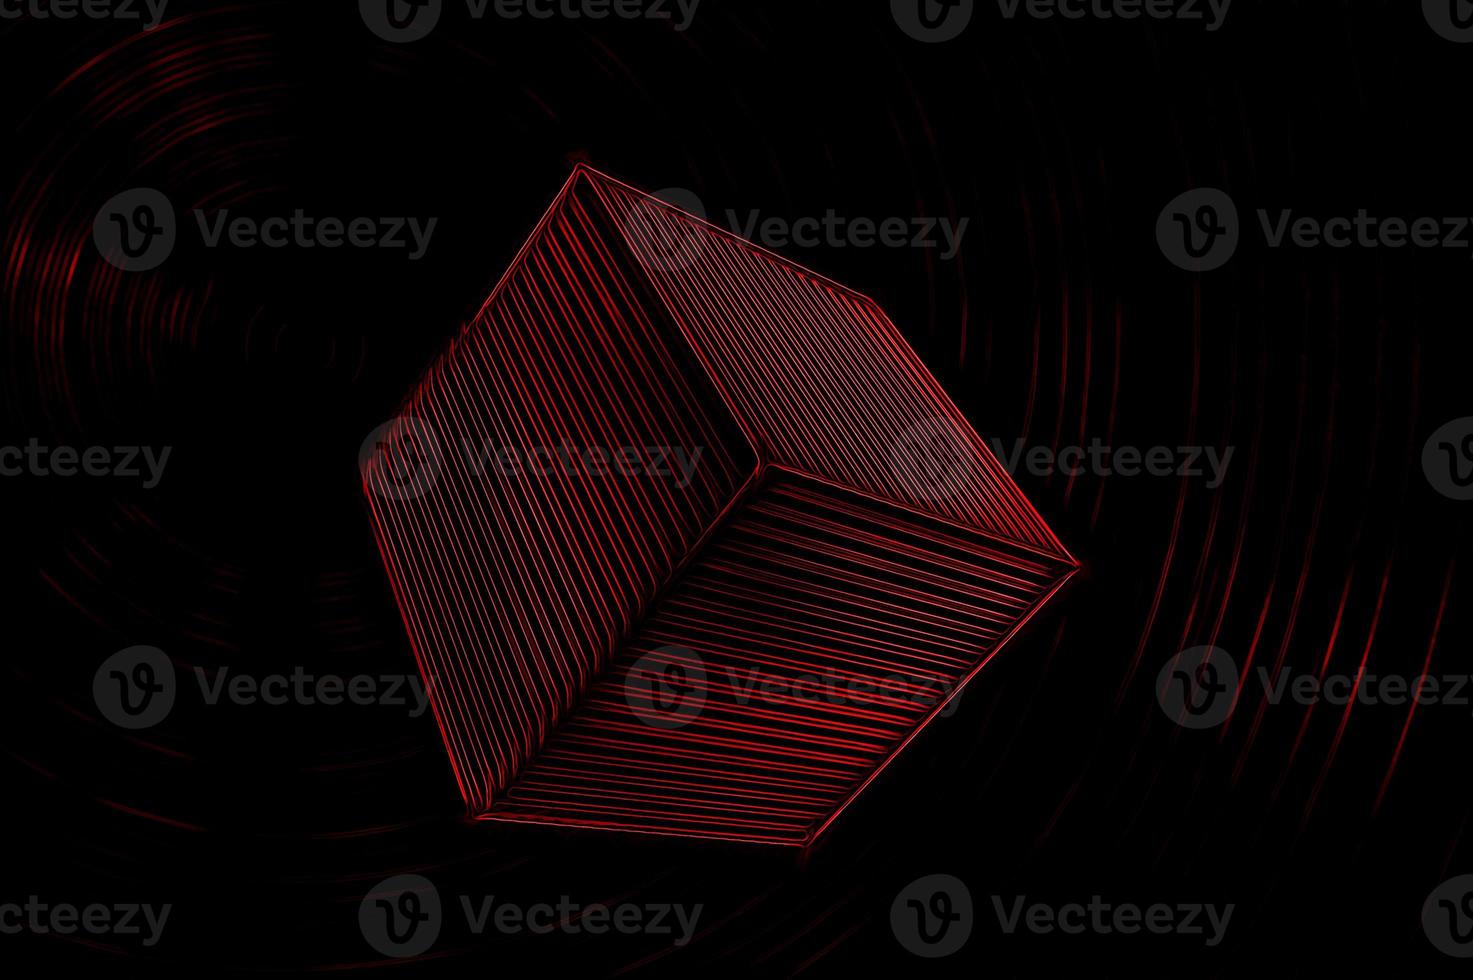 cubo 3d rojo brillante con rayas sobre un fondo negro con anillos rojos apenas visibles foto